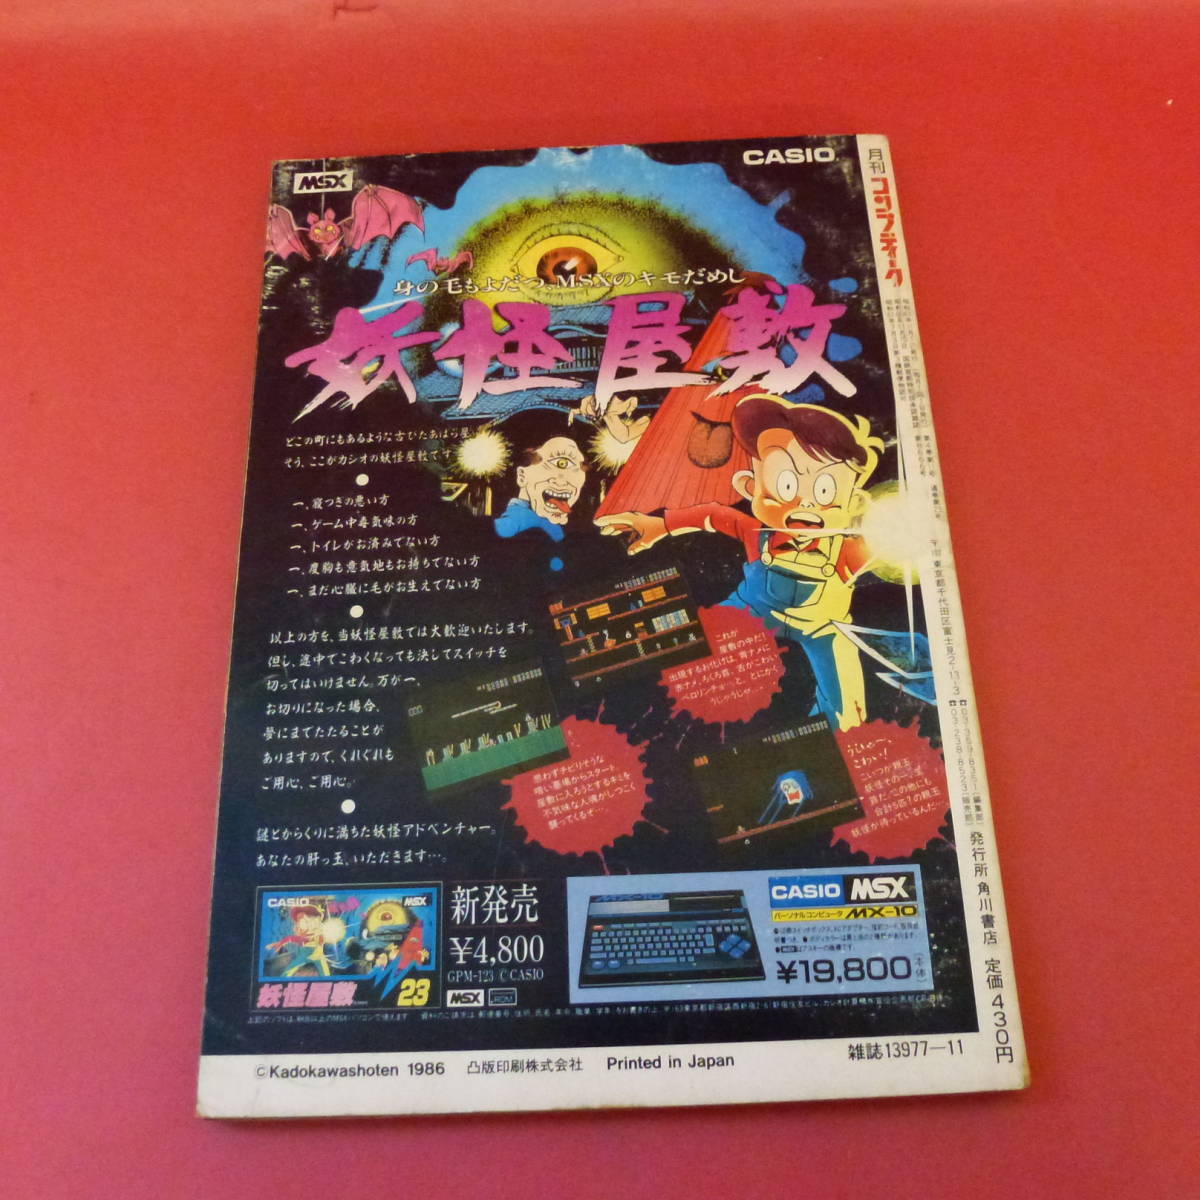 C3-220805* игра журнал comp чай k1986 год 11 месяц номер сильнейший RPG полосный .